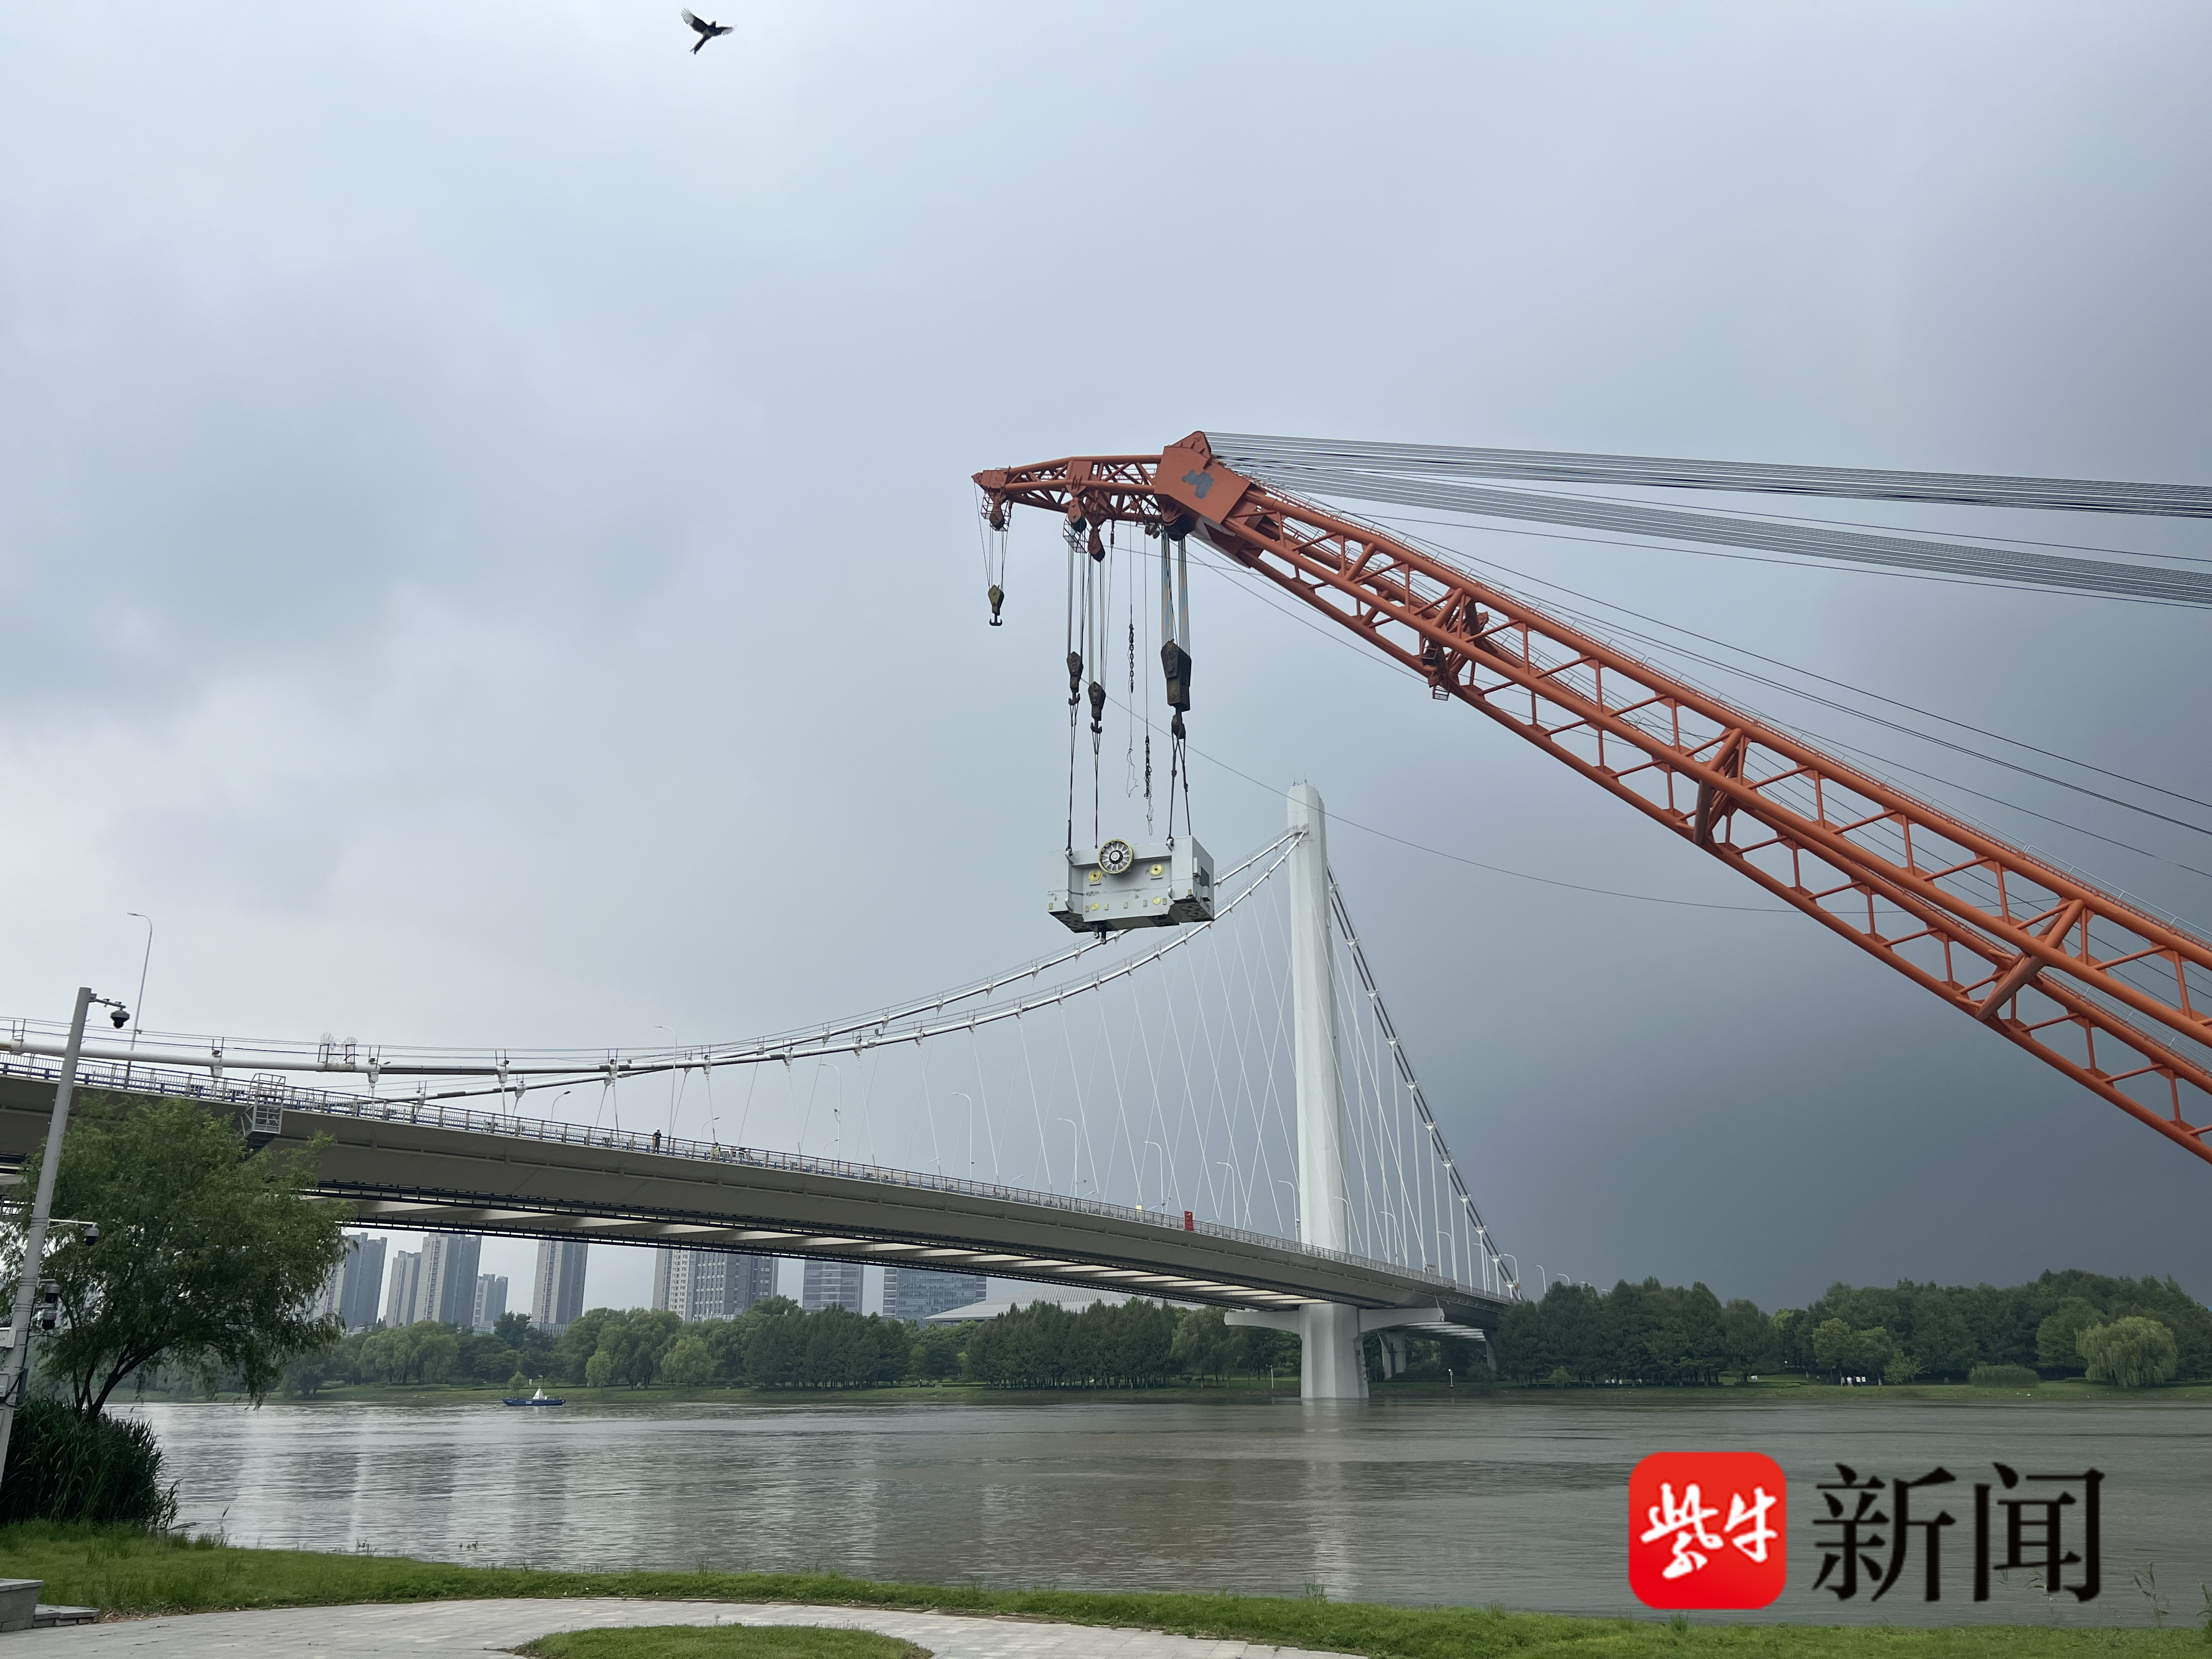 1分钟视频还原南京应天大街夹江桥事故水上清障全过程